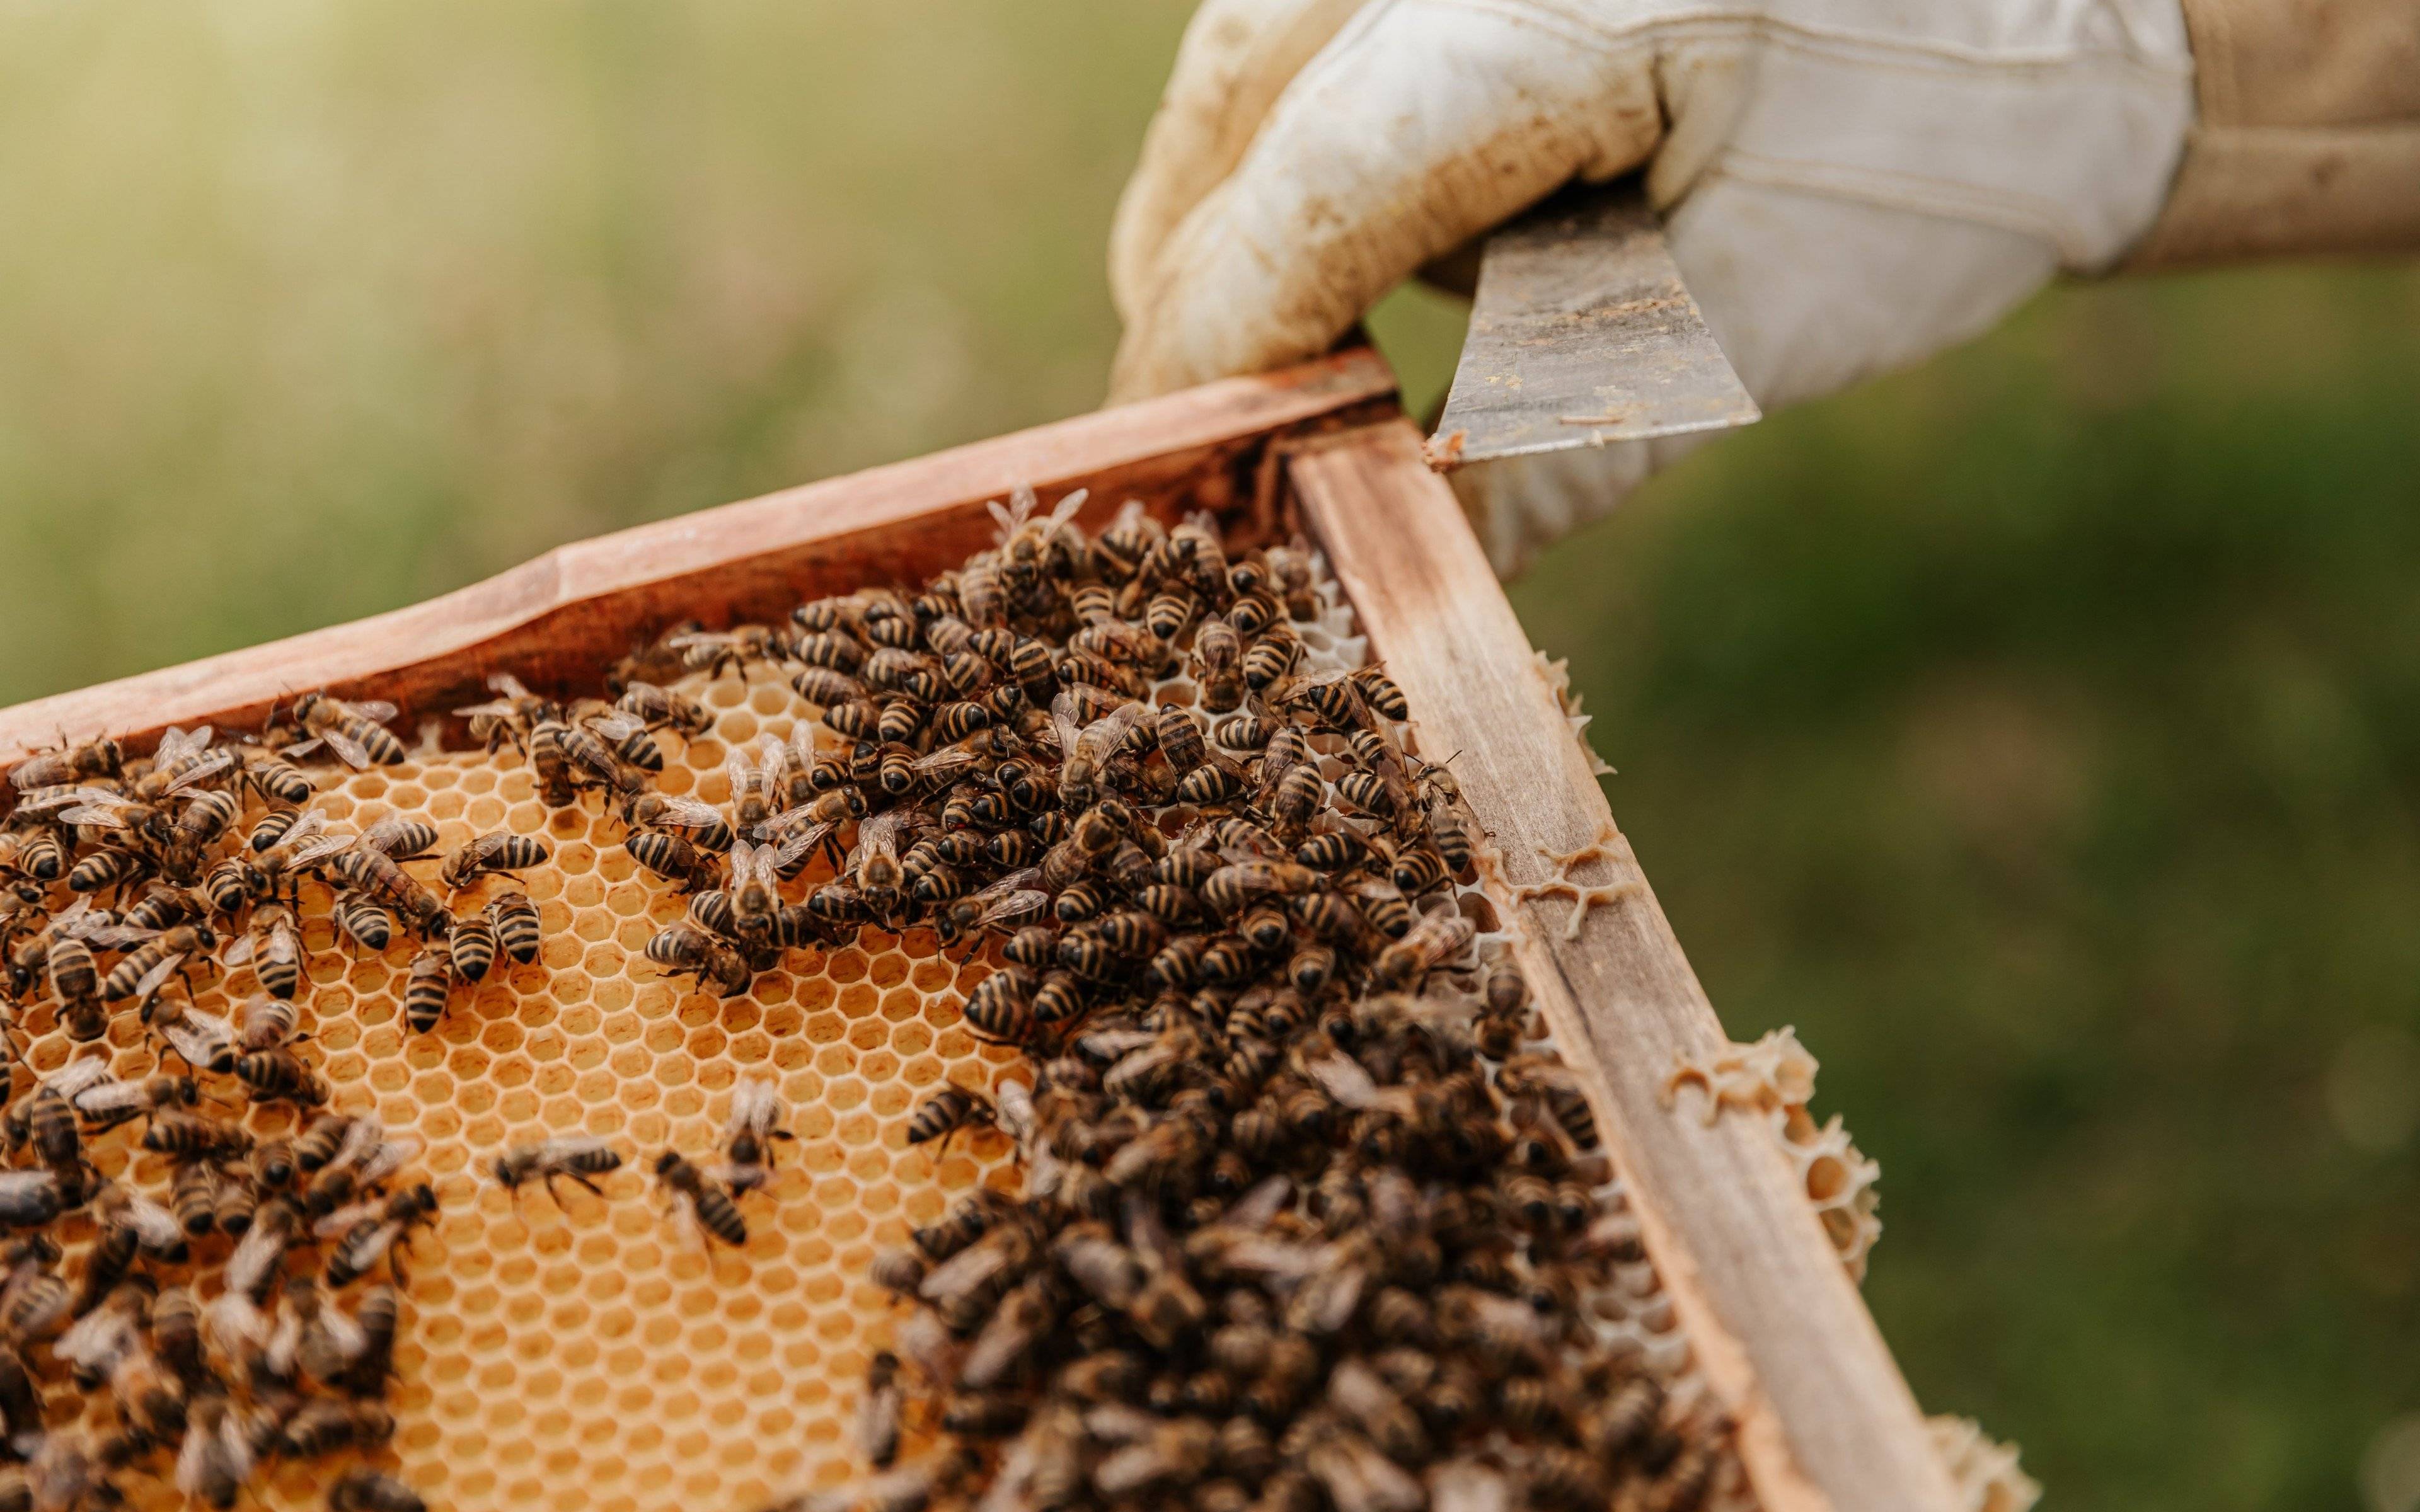 Entdecken Sie die magische Welt der Bienen auf dem Weg nach areopolis